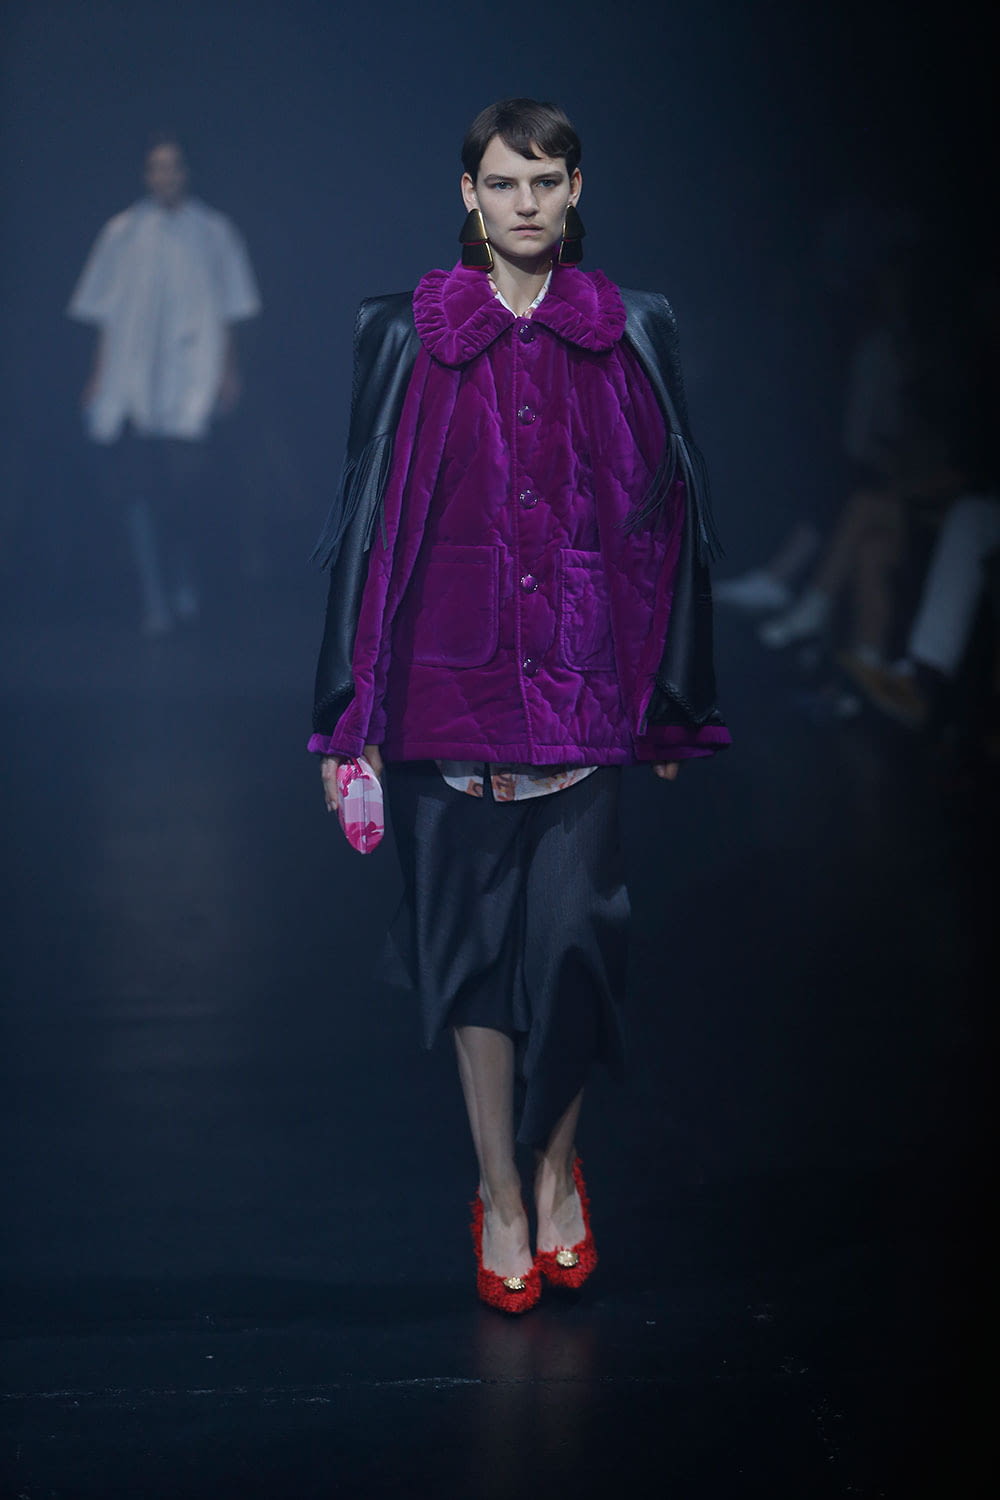 Bolos ventilador humedad Balenciaga S/S 18 womenswear #31 - The Fashion Search Engine - TAGWALK